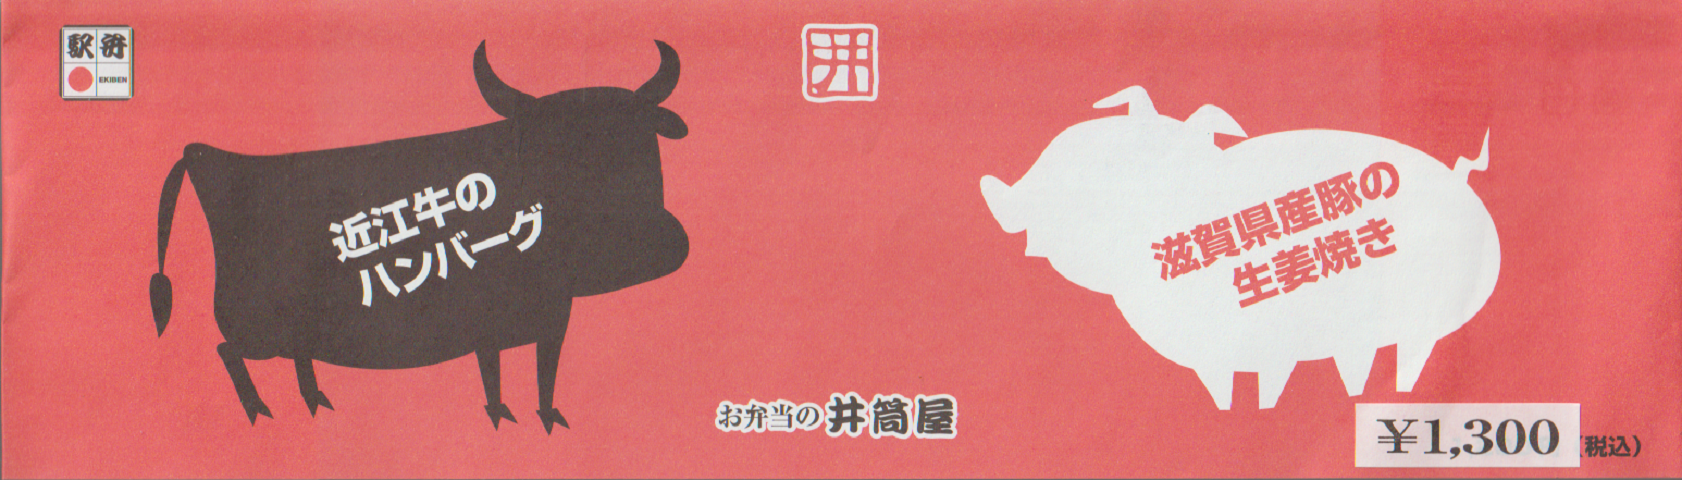 駅弁掛け紙「近江のハンバーグ・滋賀県産豚の生姜焼き」